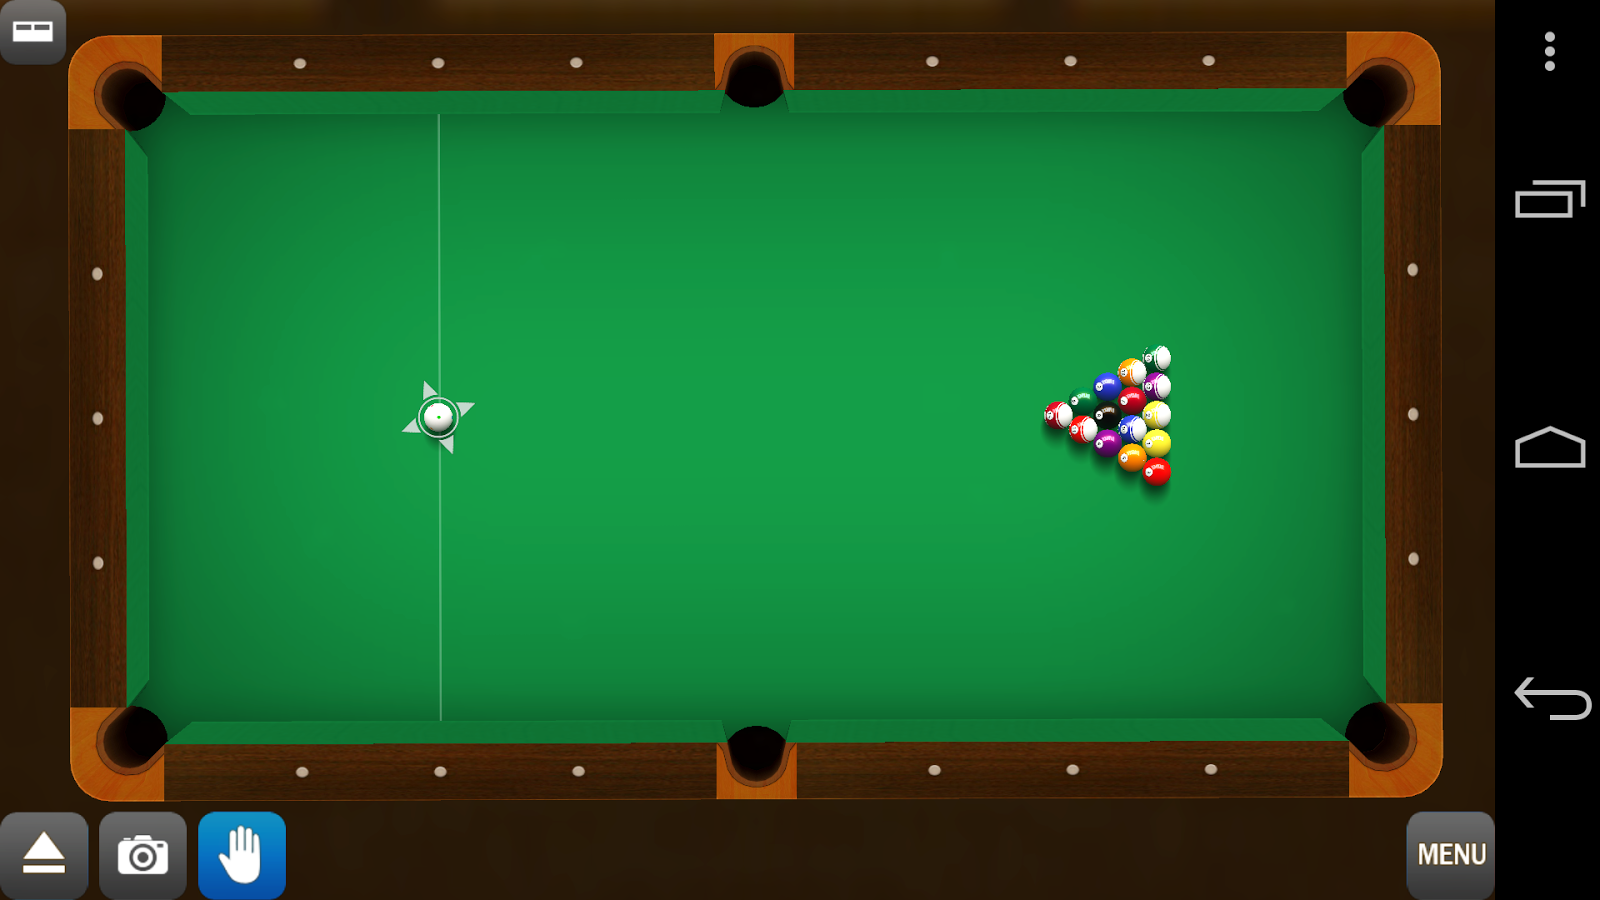 Pool Break Pro 3D Billiards v2.5.4 APK